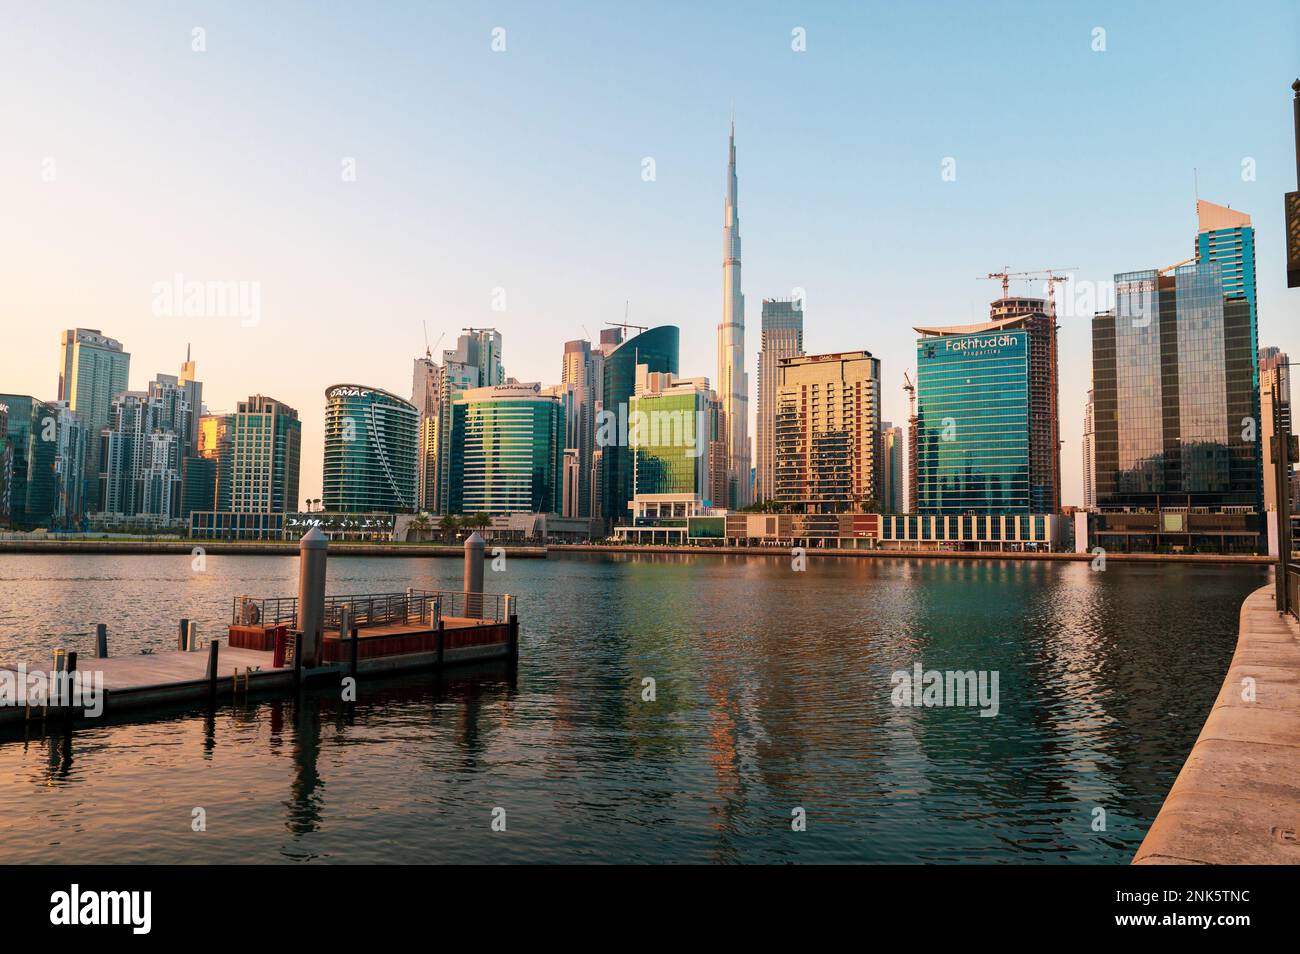 Dubaï, Émirats arabes Unis - 10 septembre 2022 : Dubaï ligne d'horizon d'une ville animée du centre-ville vue de la zone de la baie des affaires, entourée de gratte-ciels Banque D'Images